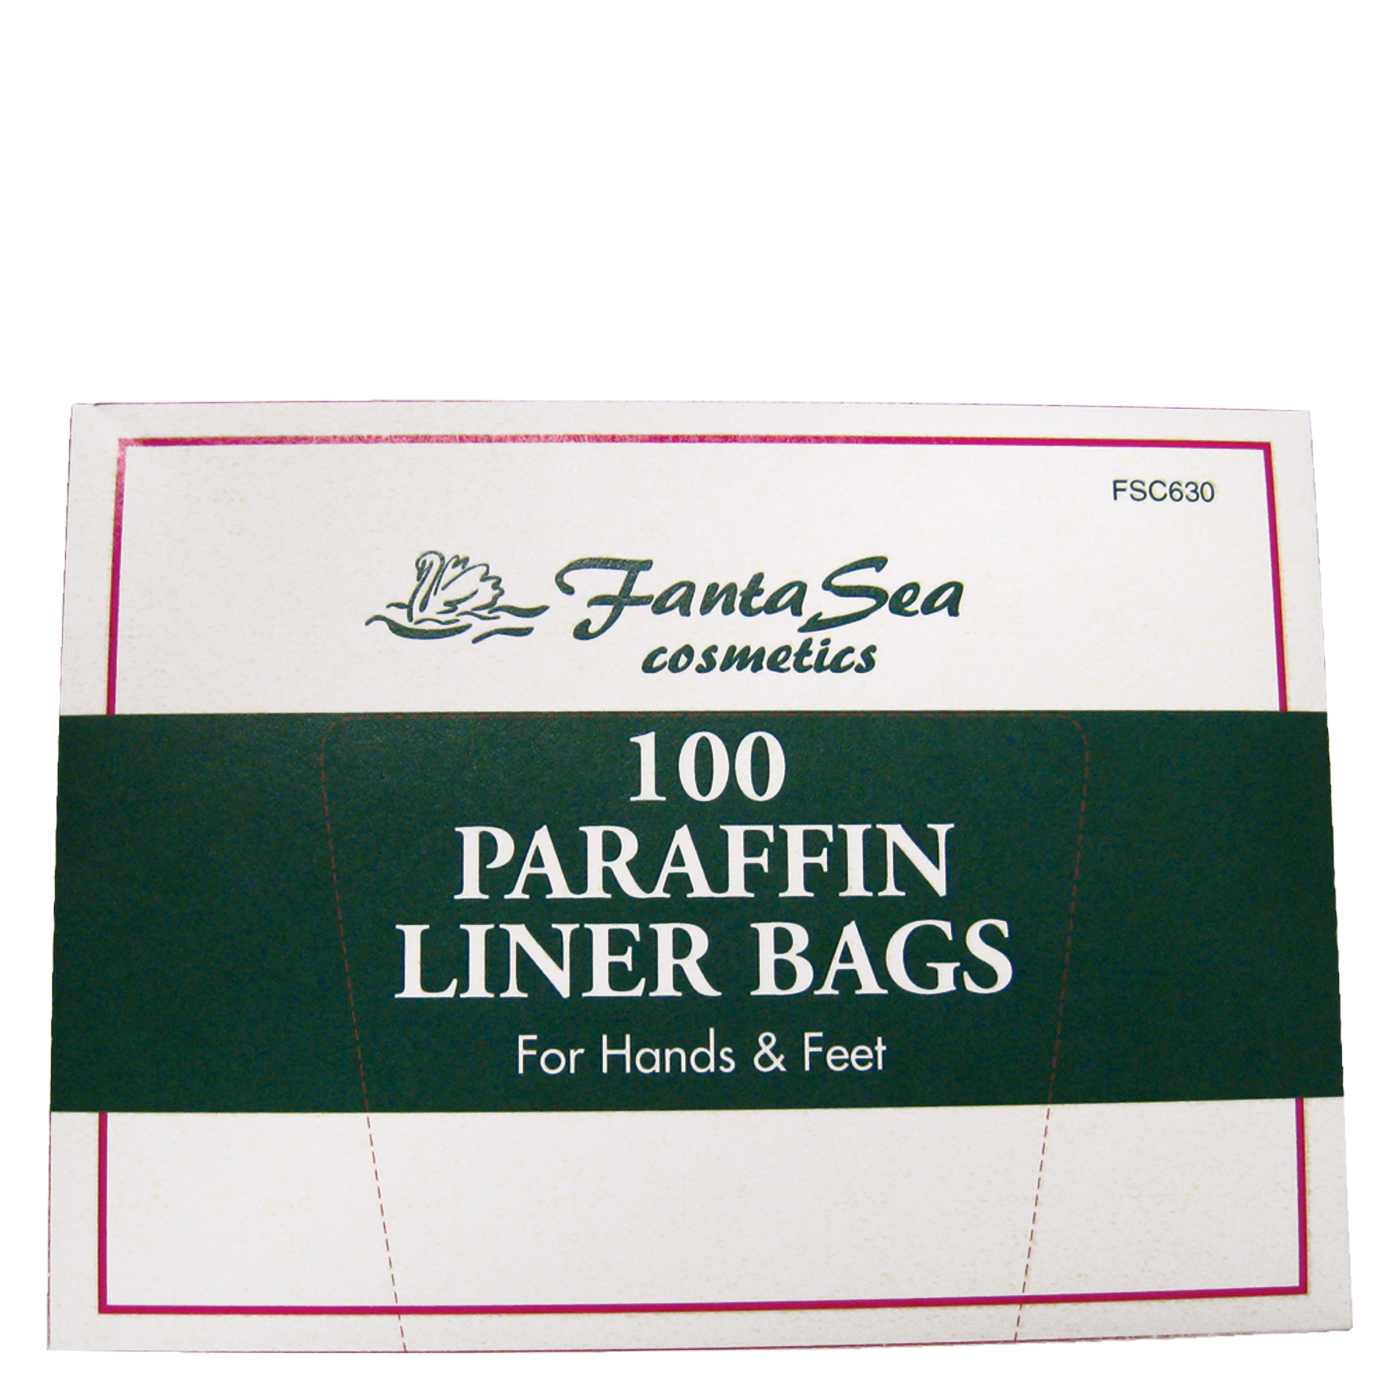 Paraffin Liner Bags - 100 per box